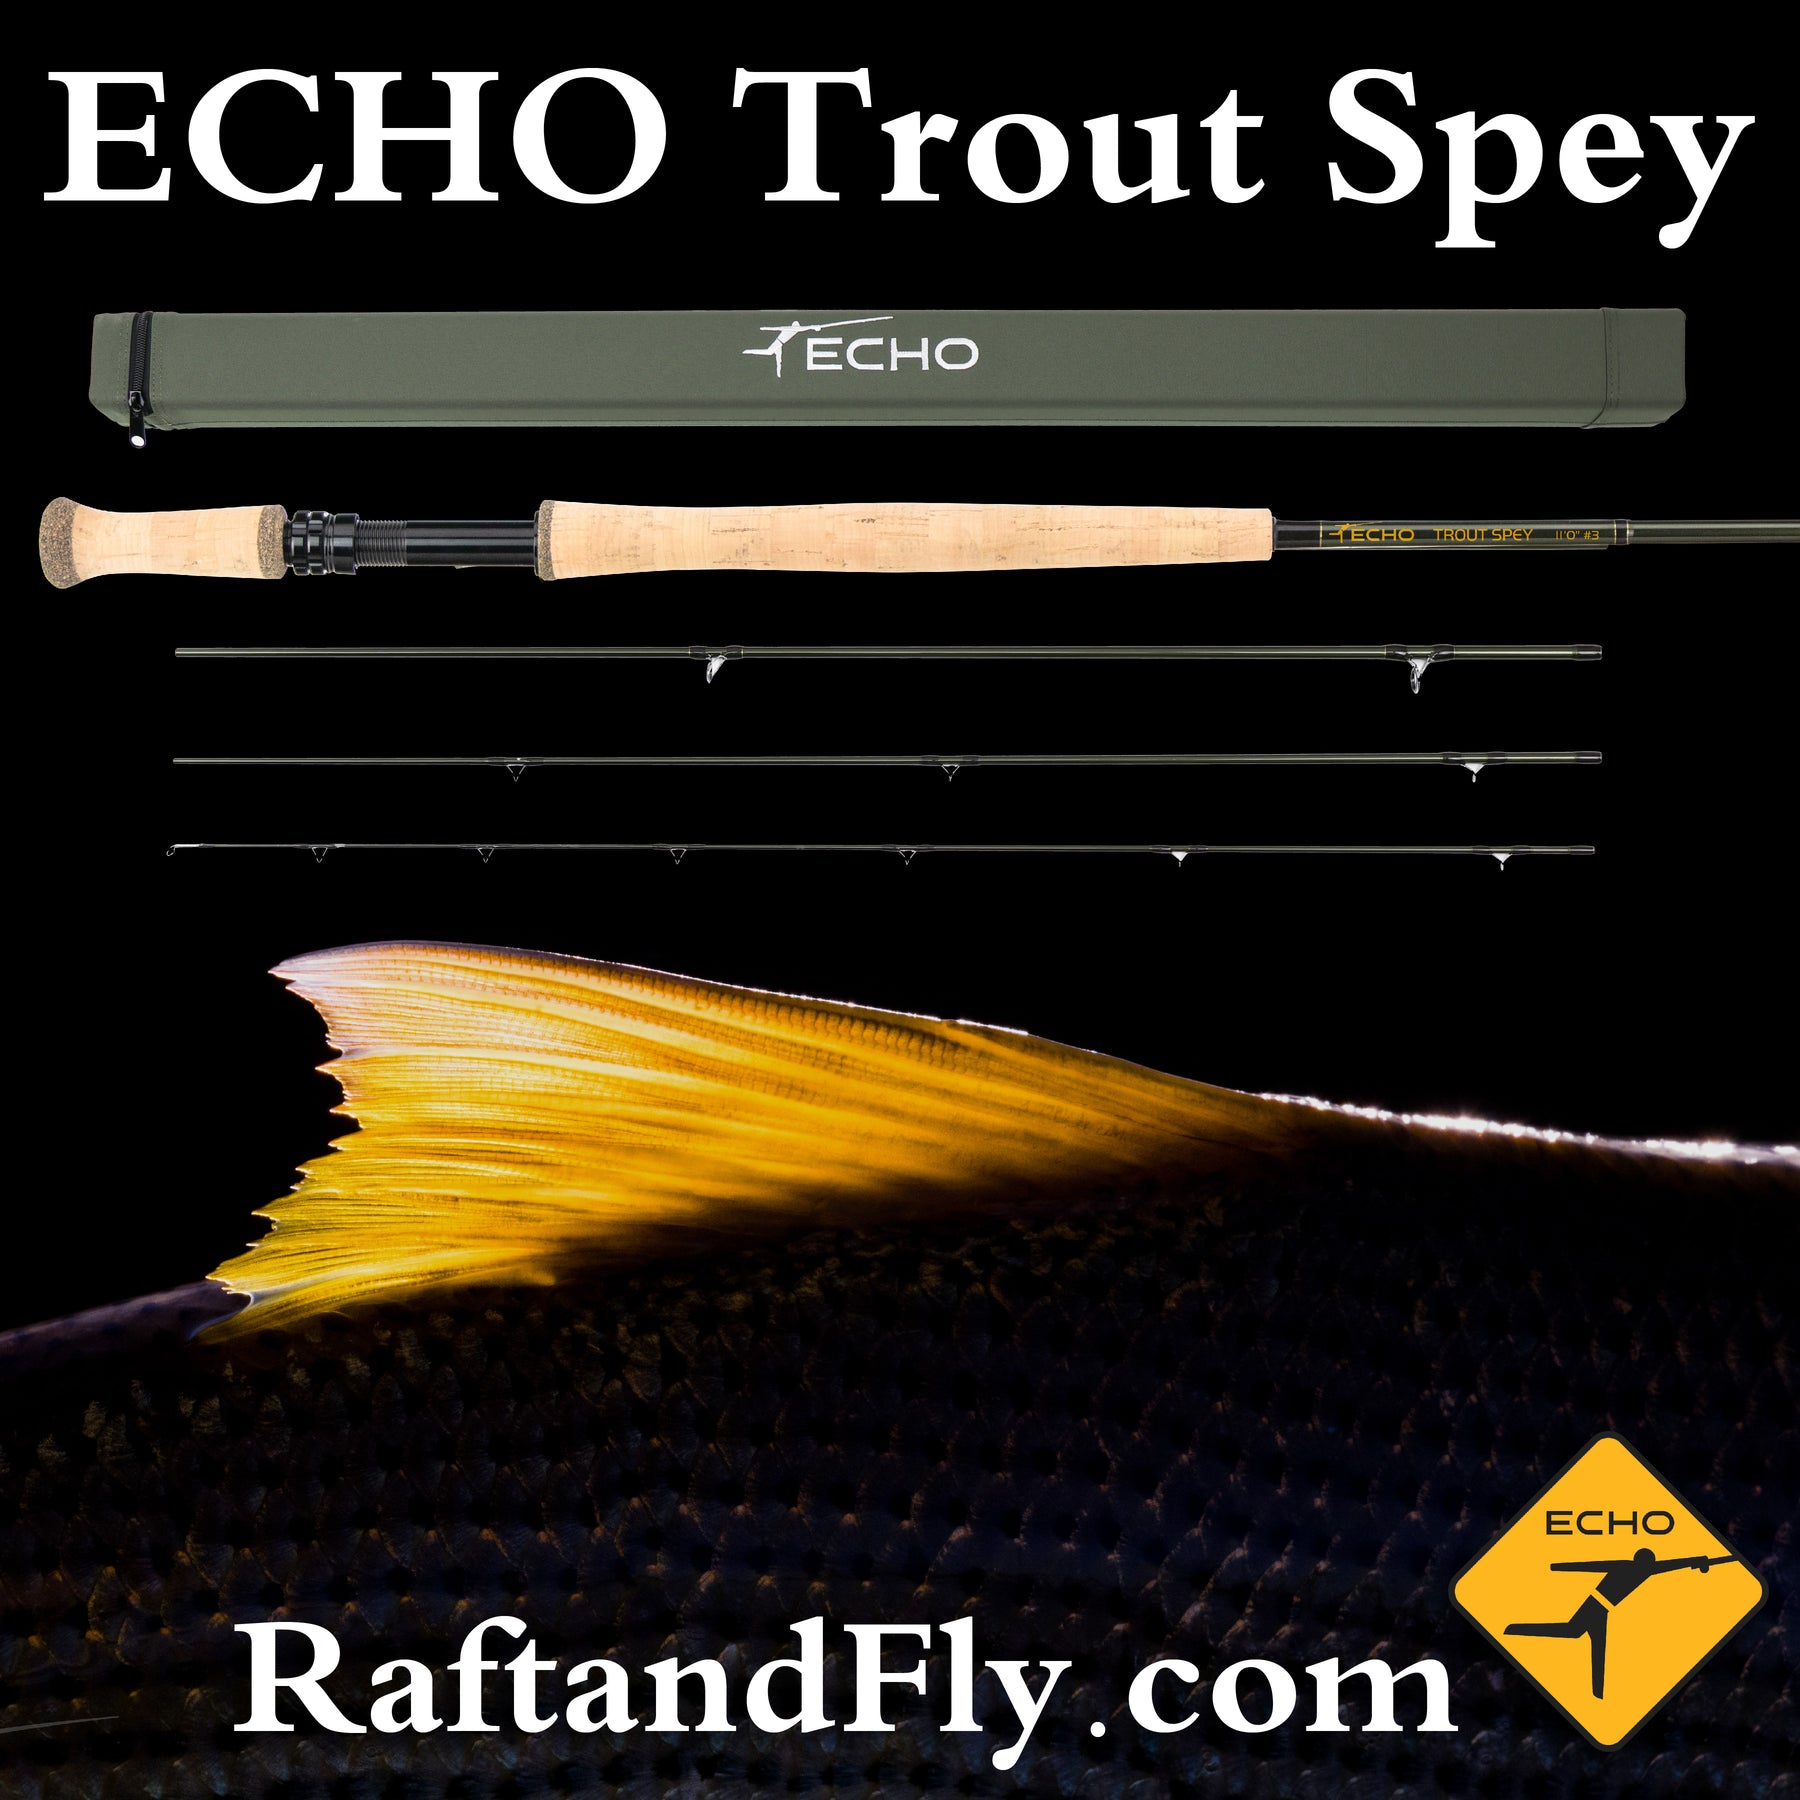 Echo Trout Spey Fly Rod - 11ft 0in 4wt